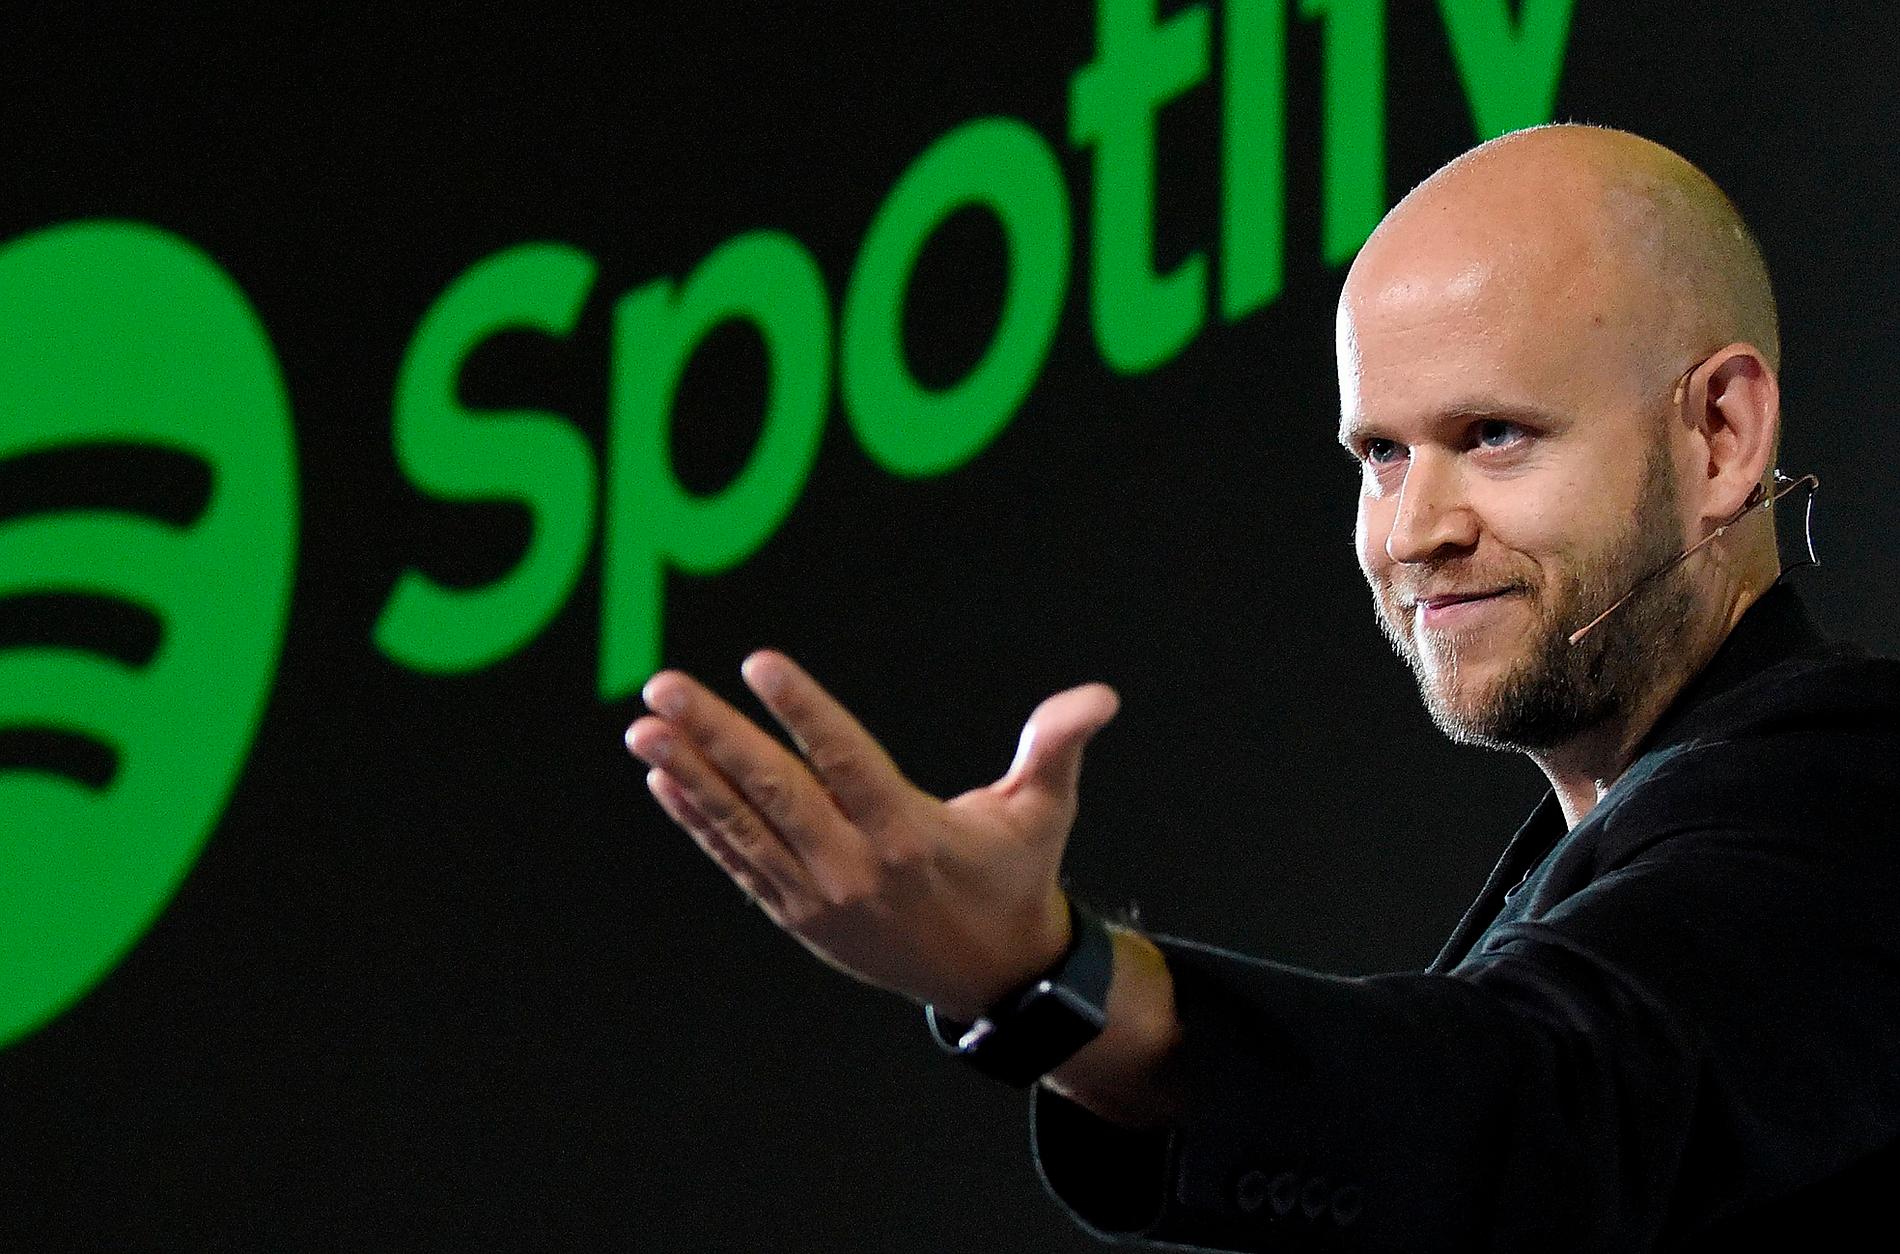 En vinnare – som gör brakförlust. Daniel Ek, grundare och vd för Spotify. Trots minusresultat år efter år lyckas bolaget ständigt locka till sig nytt kapital.